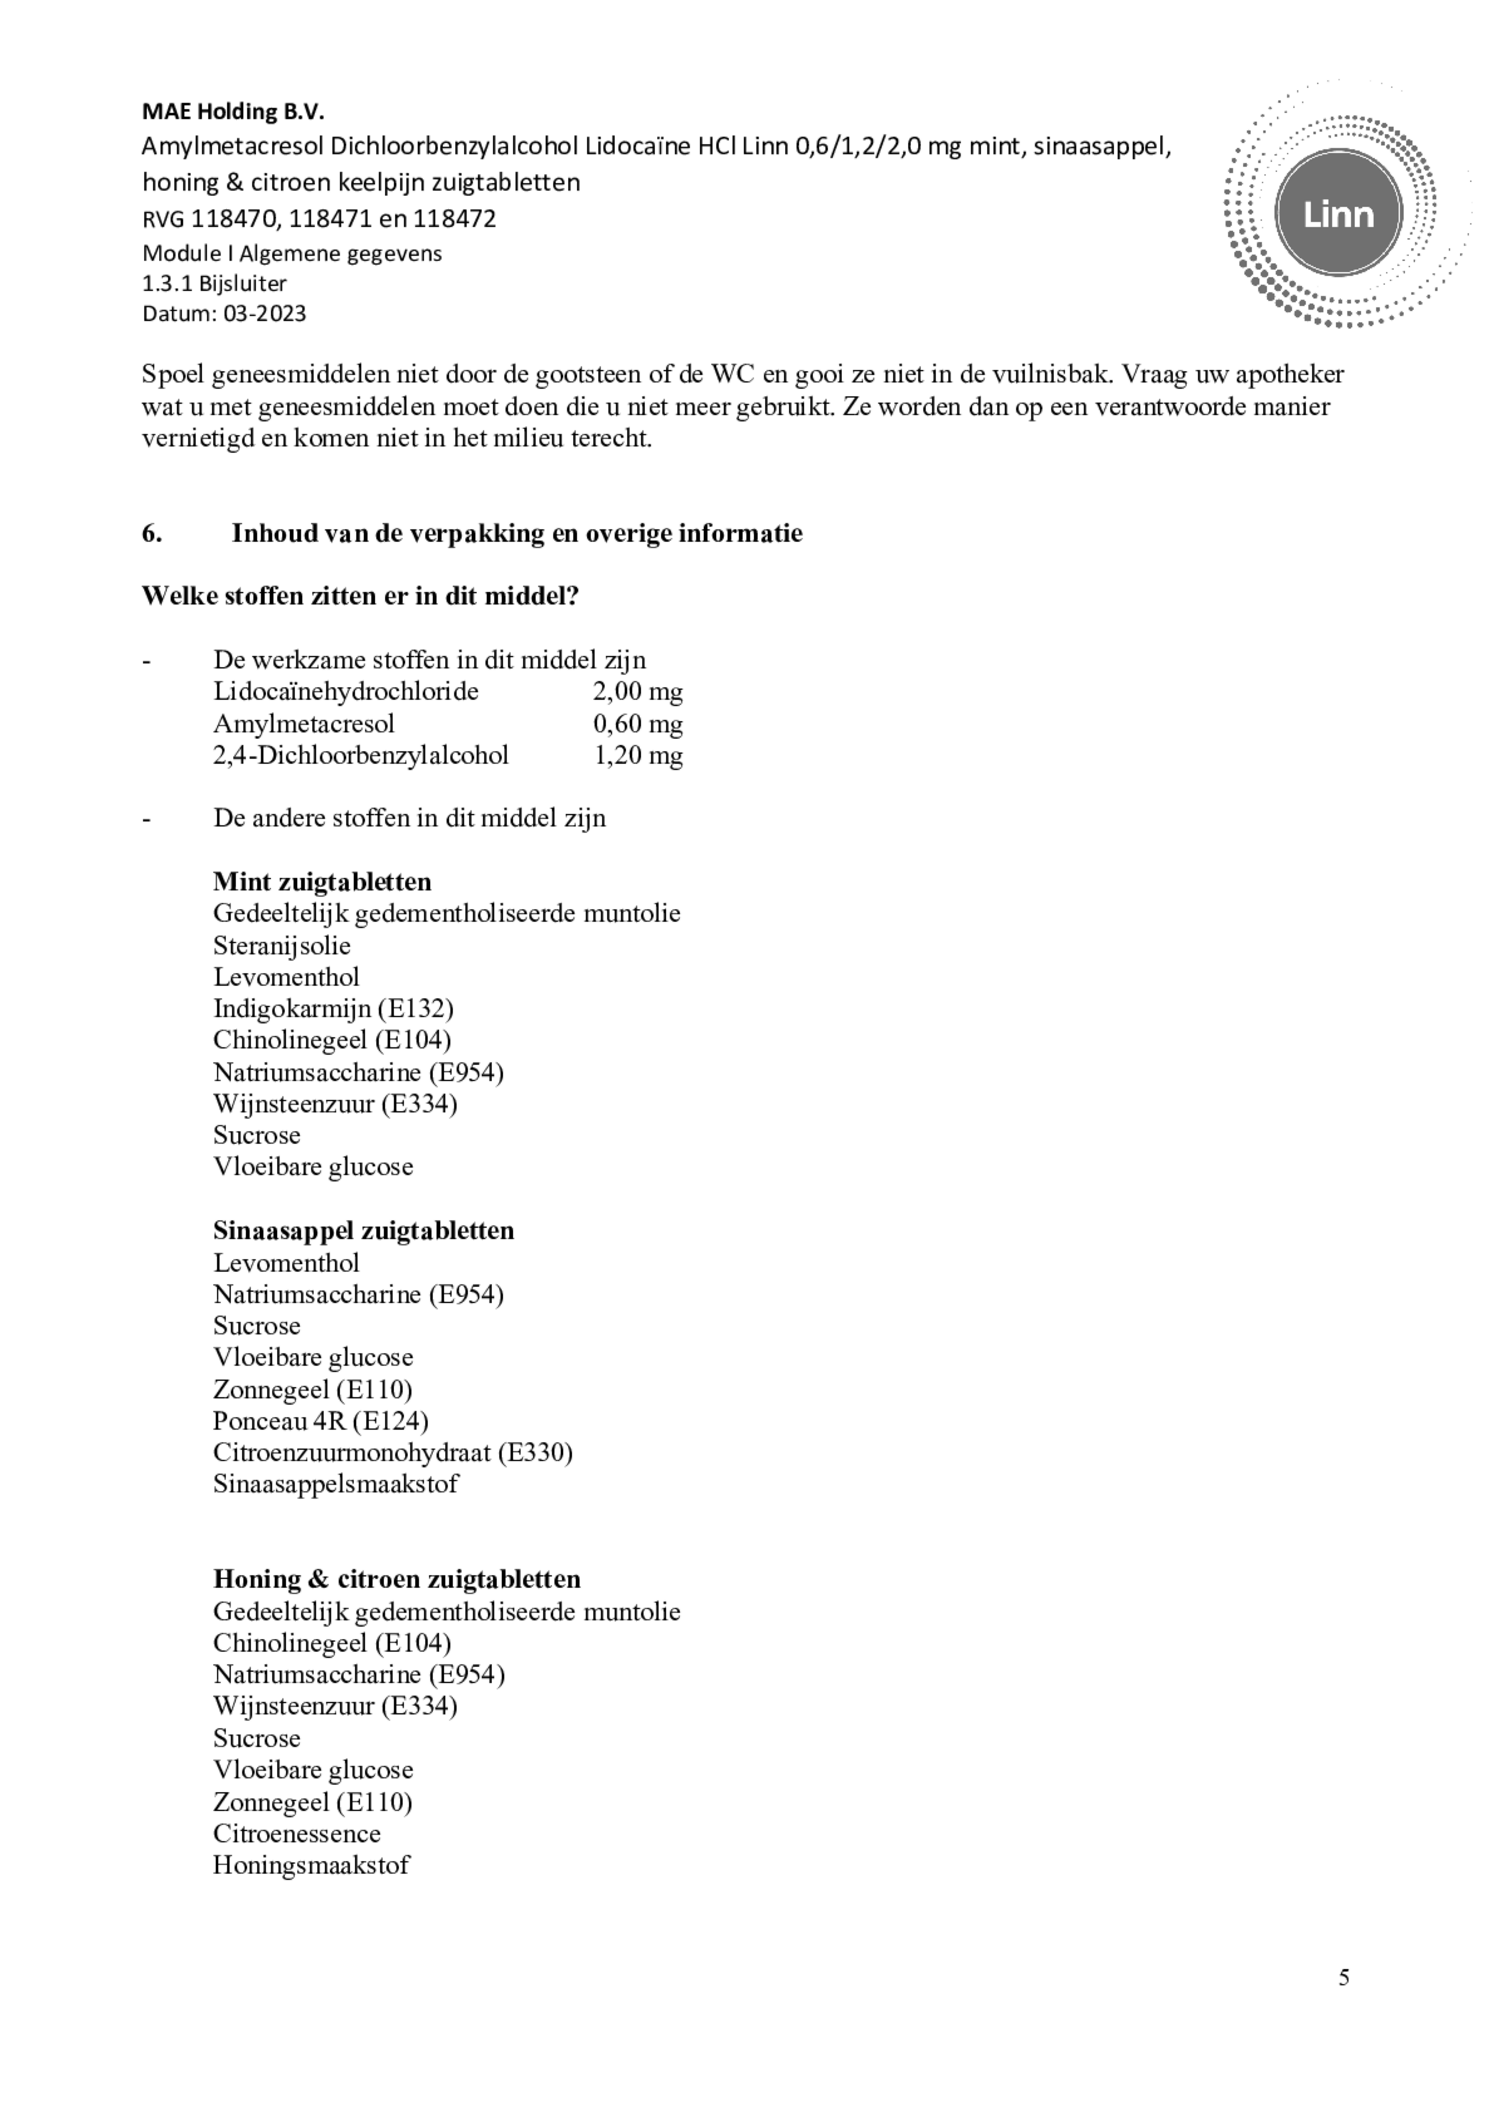 Lidocaine Keelpijn Honing en Citroen Zuigtabletten afbeelding van document #5, bijsluiter